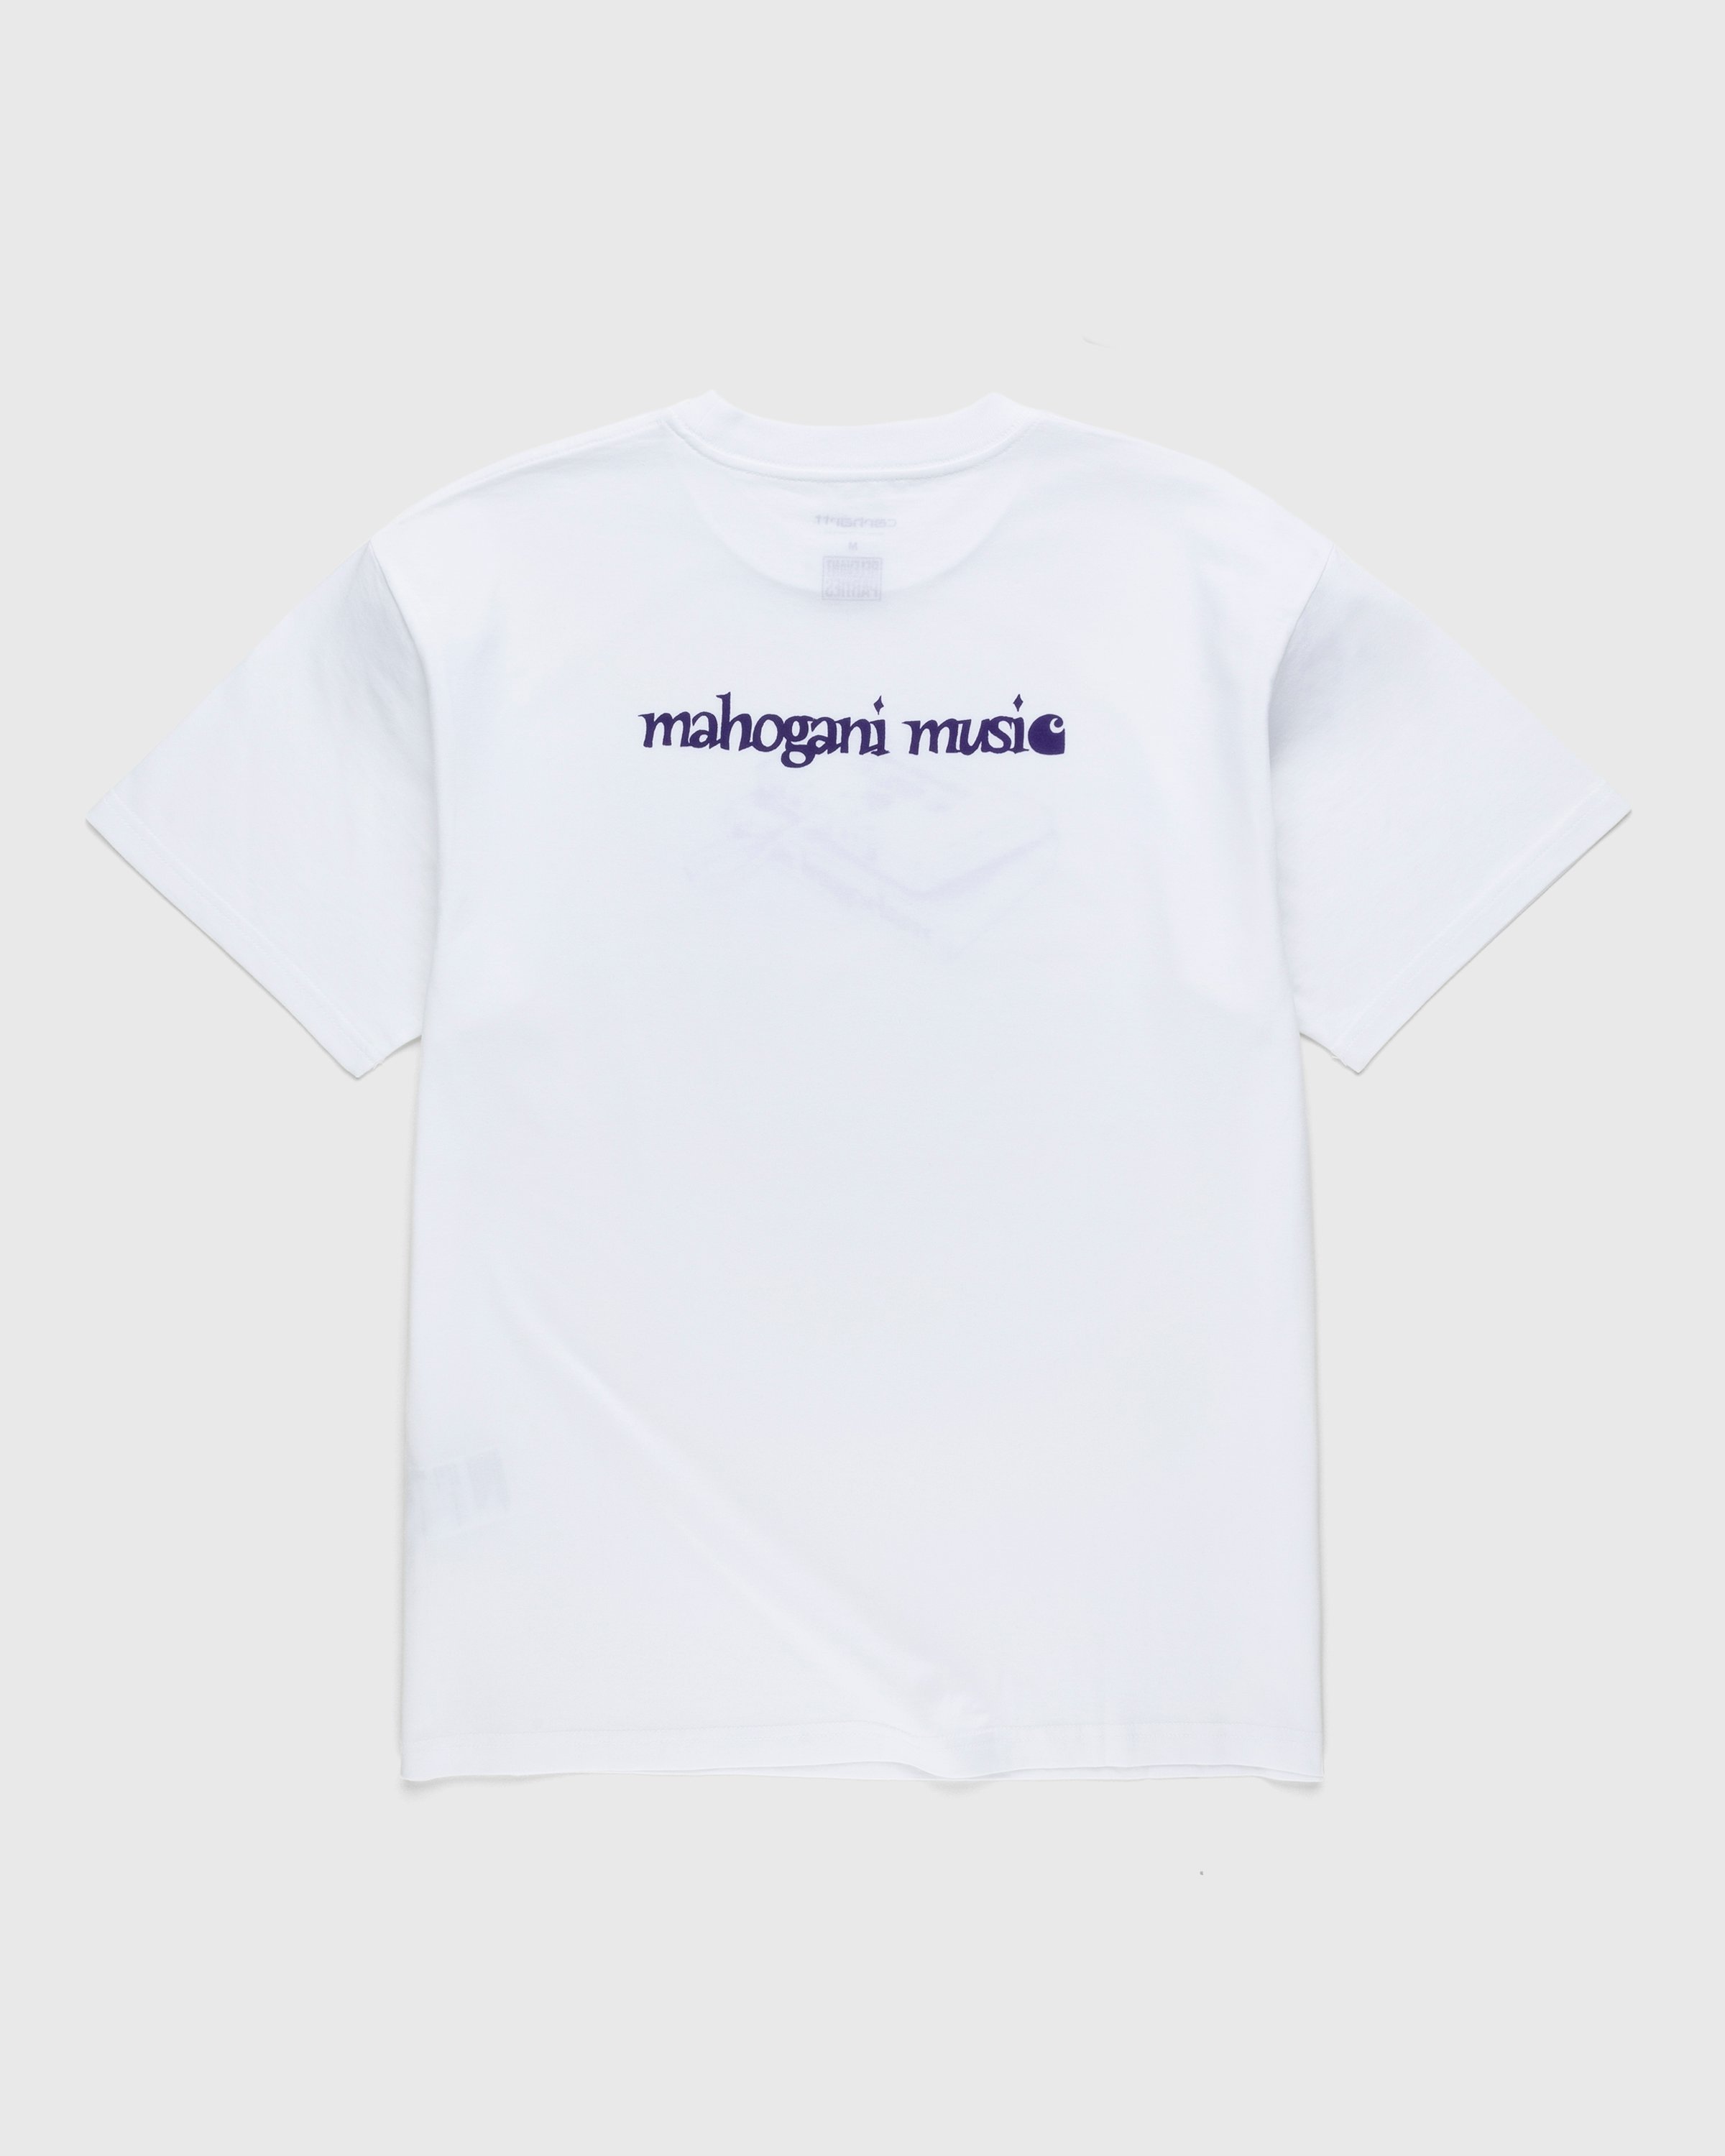 Carhartt WIP - Mahogani Music T-Shirt White/Purple - Clothing - White - Image 2